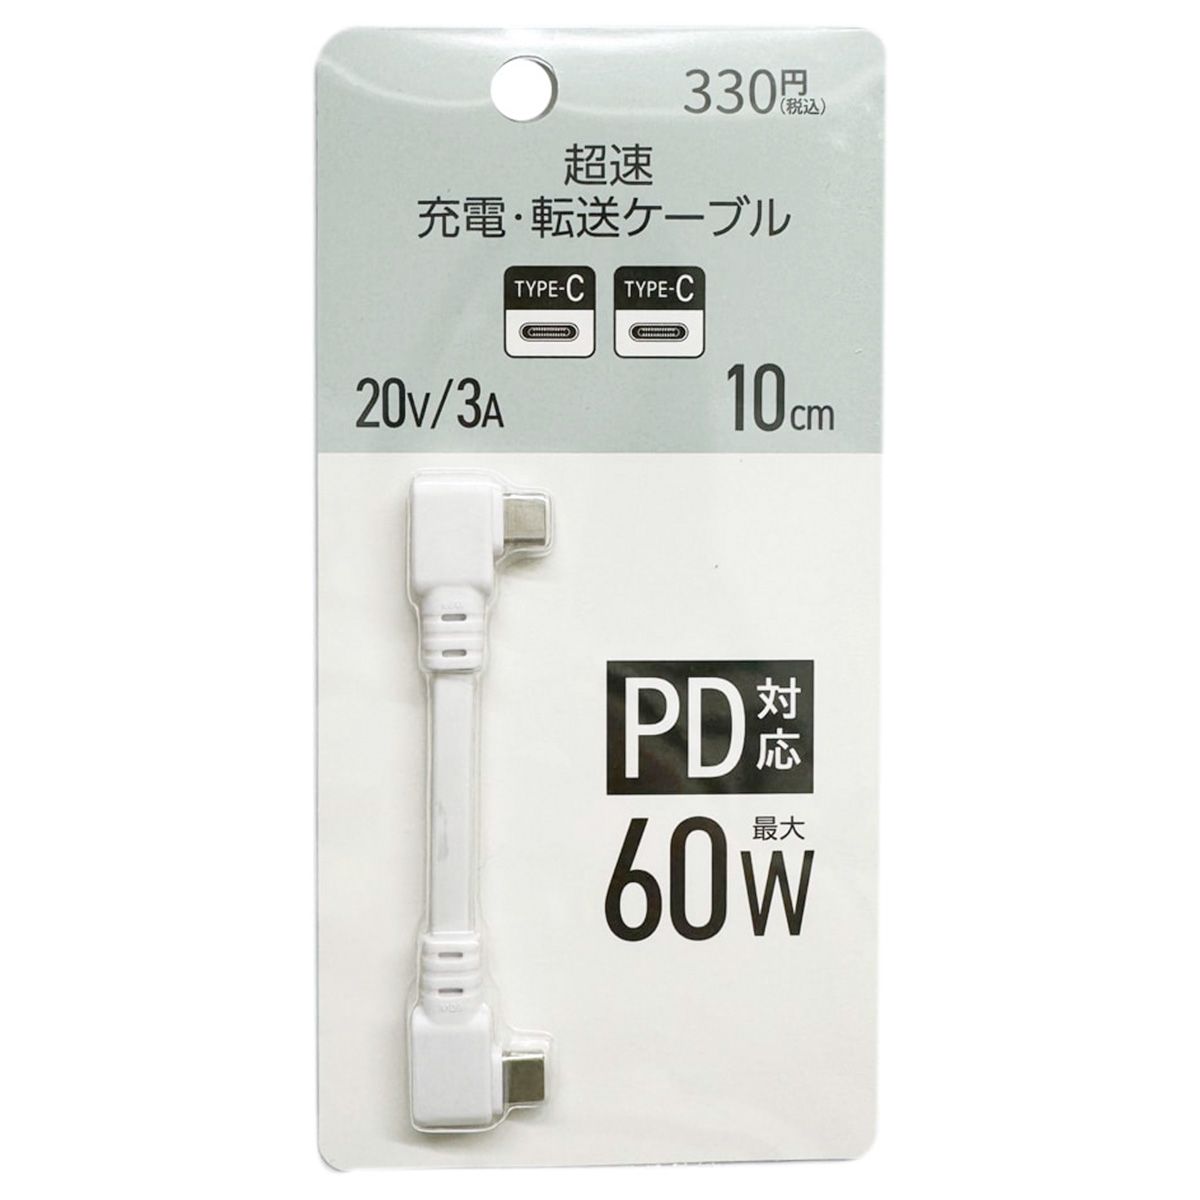 PB.超速PD対応充転ケーブル10cm60W ホワイト  1550/053287